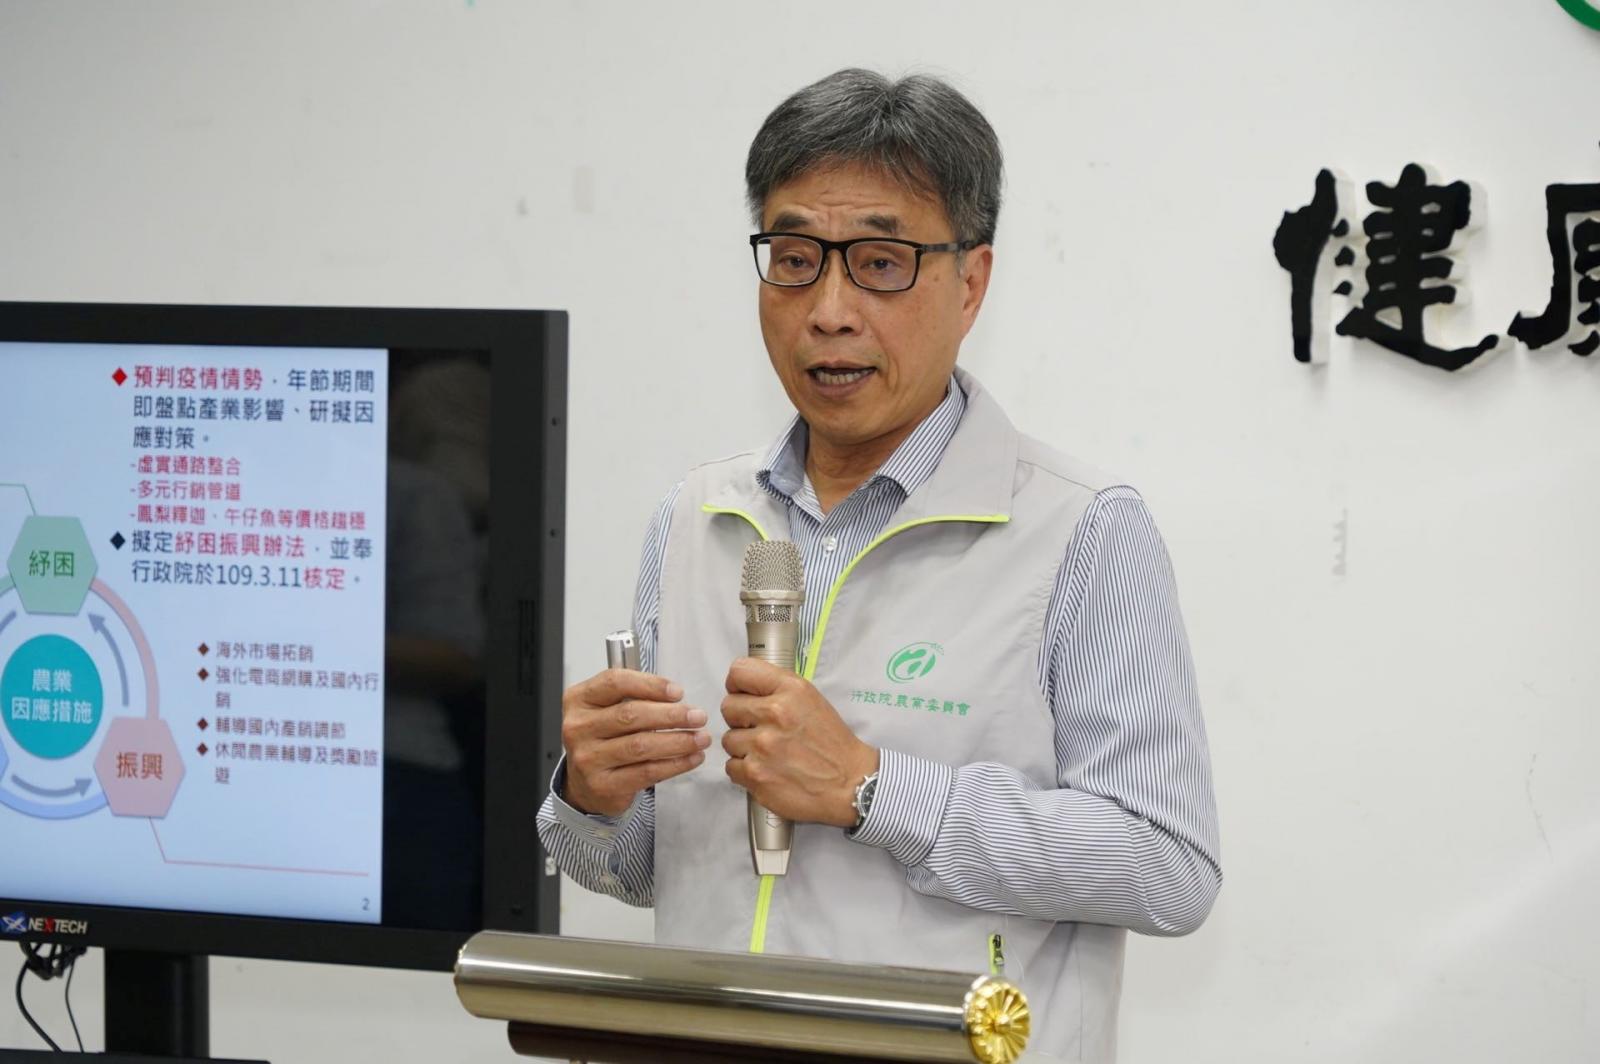 農委會陳駿季副主委主持記者會說明。